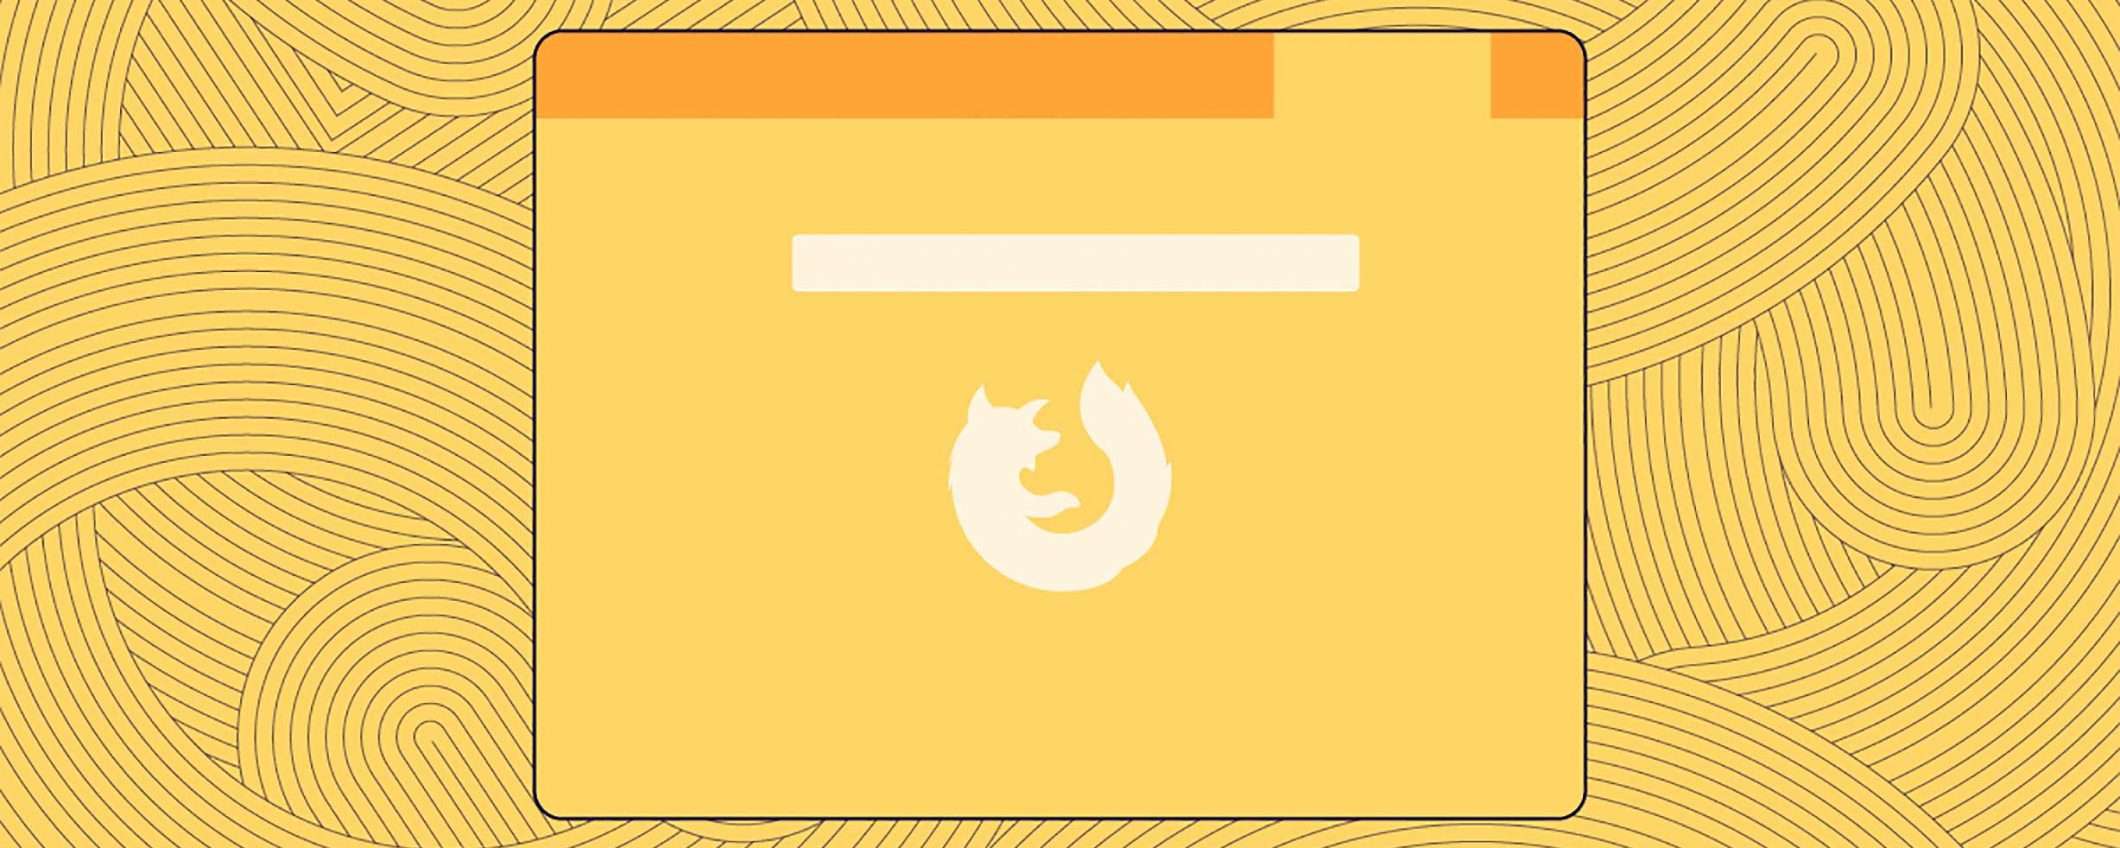 Firefox 66 blocca l'auto-play dei video